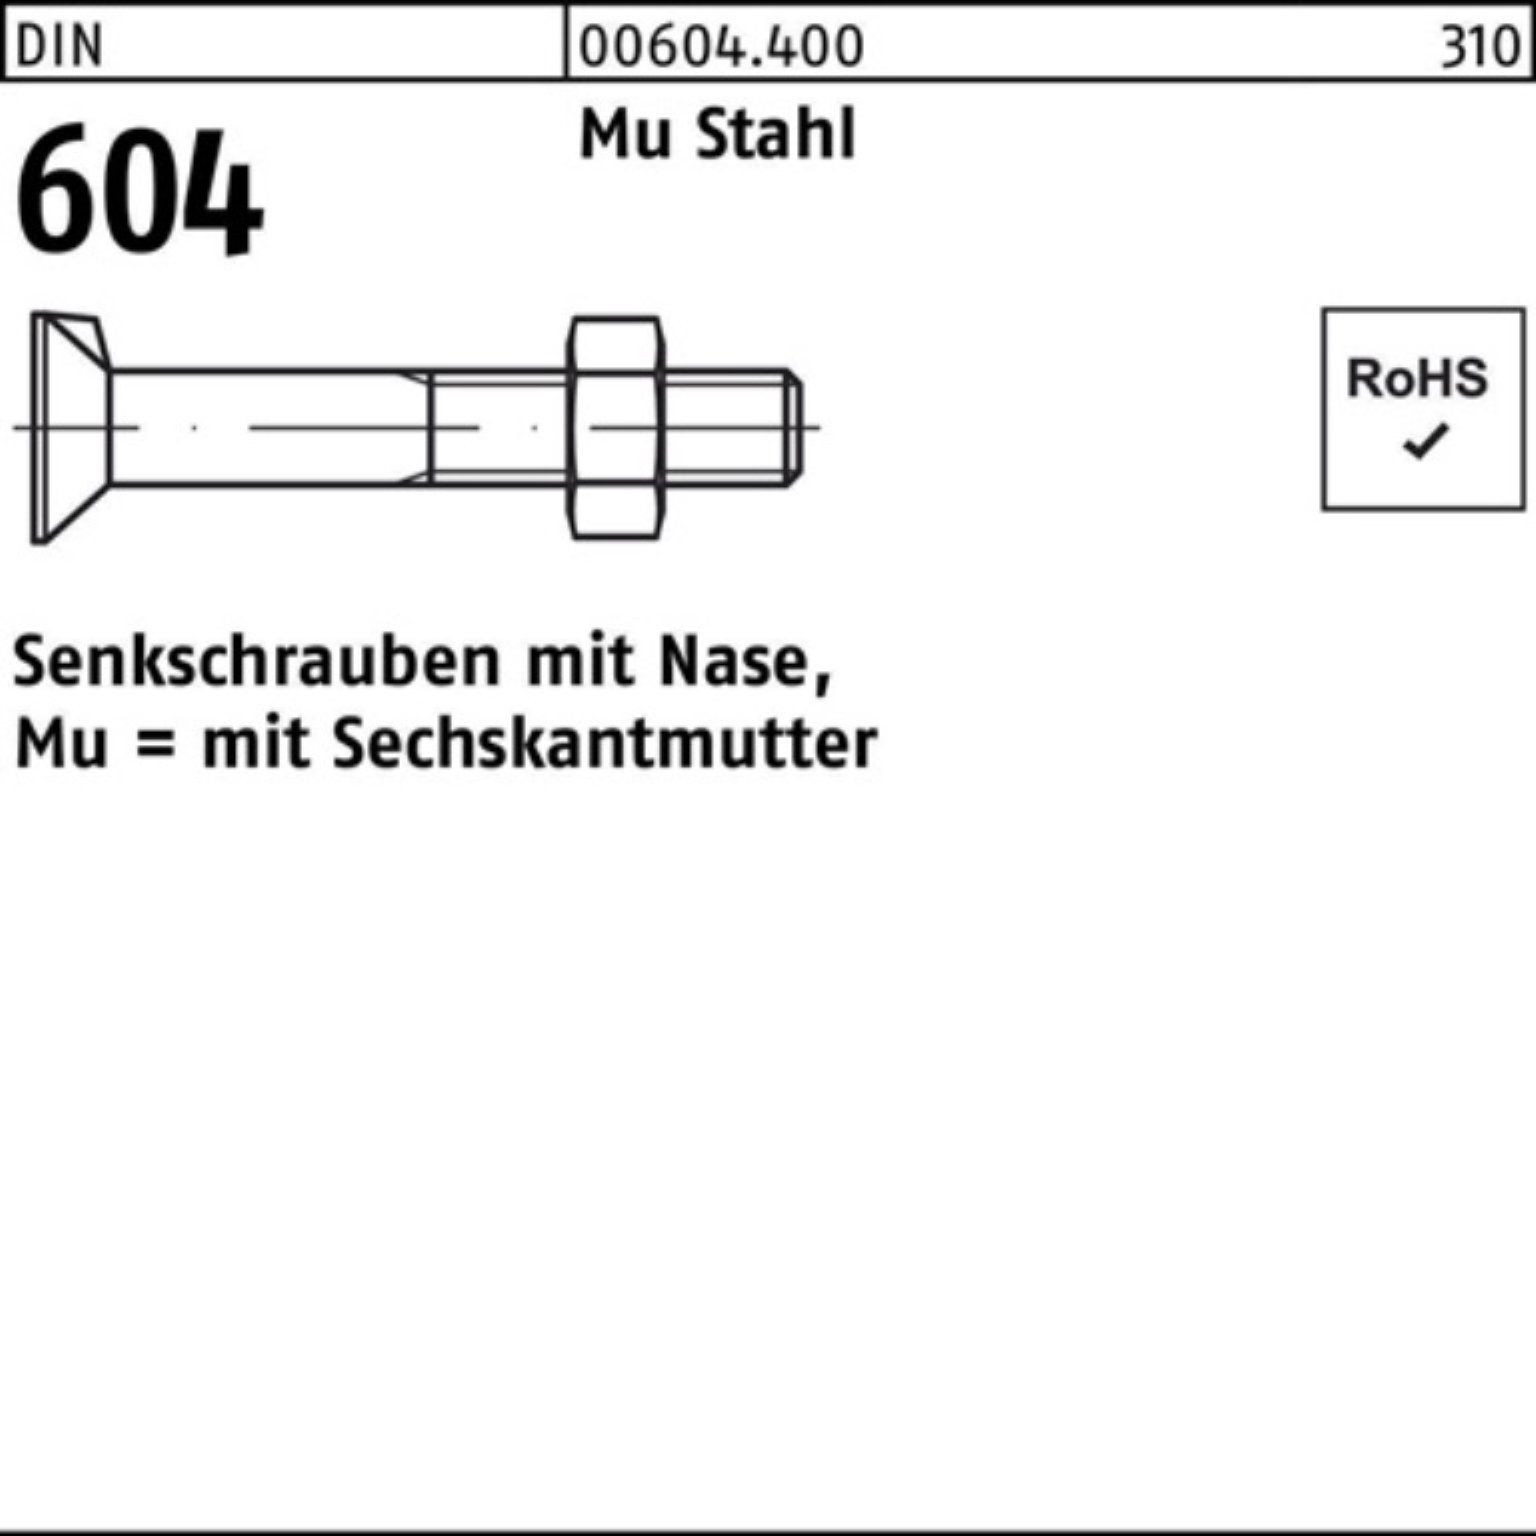 Reyher Senkschraube 100er Pack Senkschraube DIN 604 Nase/6-ktmutter M12x 120 Mu Stahl 4.6